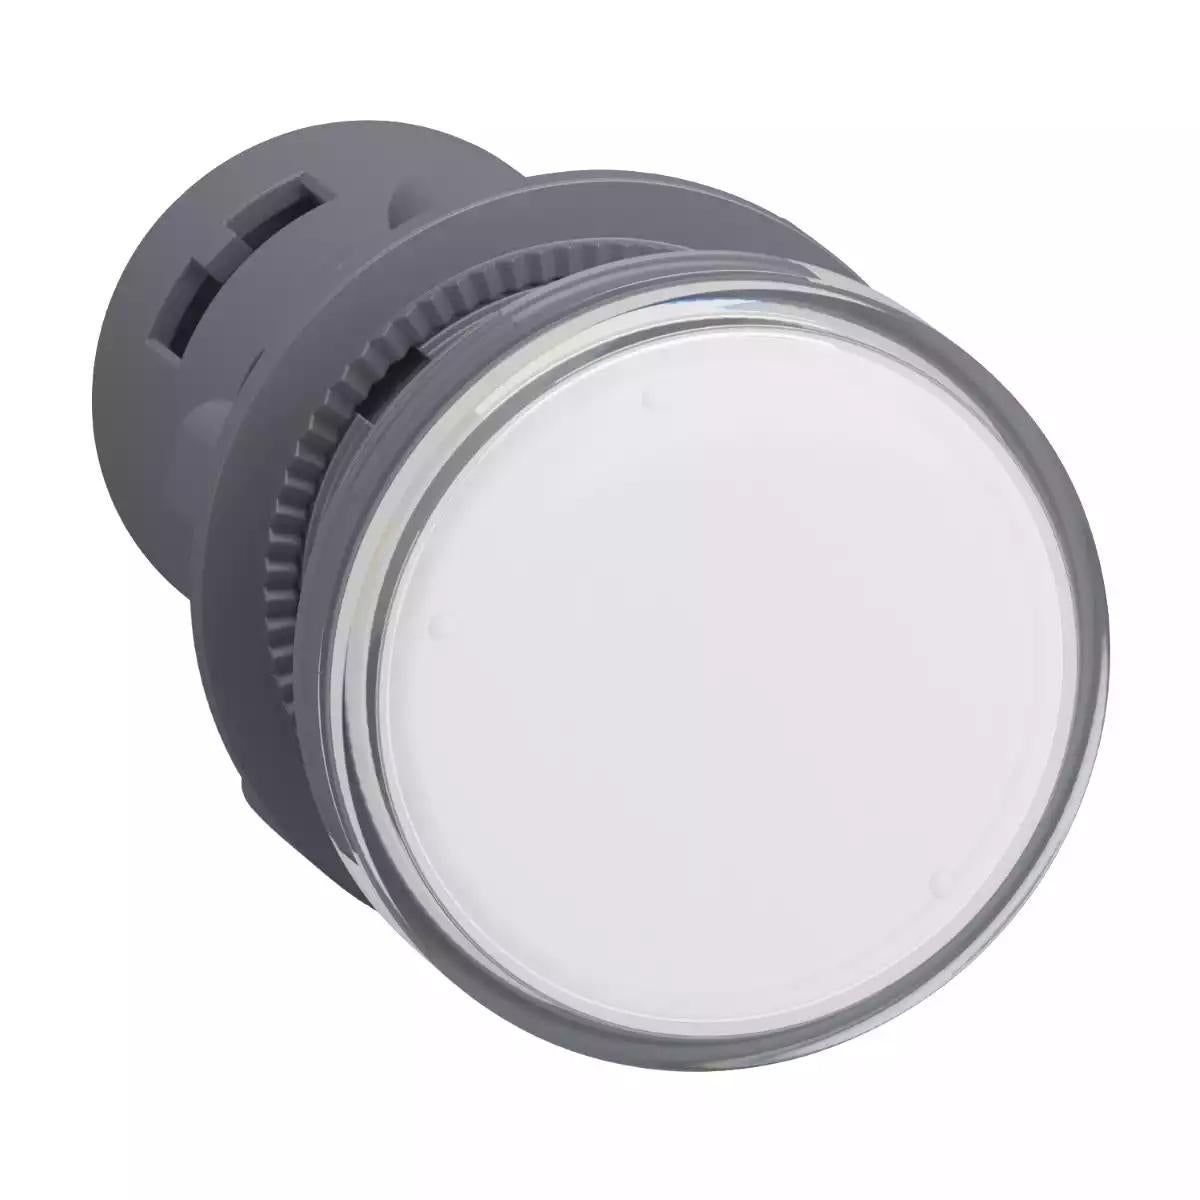 Schneider Electric Harmony Easy XA2E round pilot light Ã˜ 22 - white - integral LED - 220 V AC - screw clamp terminals